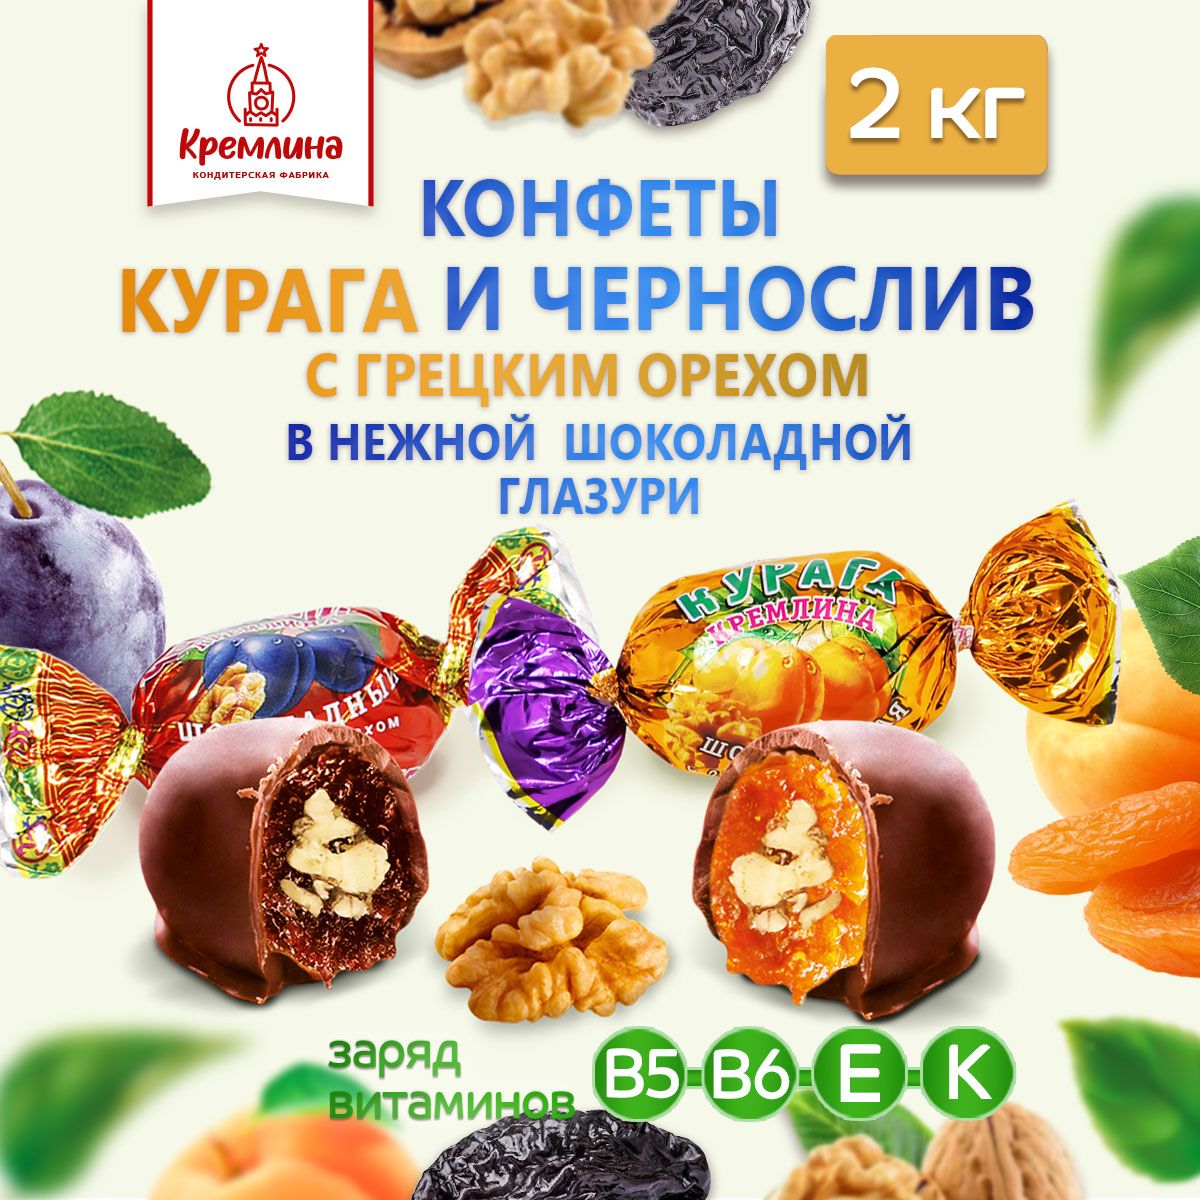 Конфеты Кремлина Чернослив с грецким орехом и Курага с грецким орехом, 2 кг